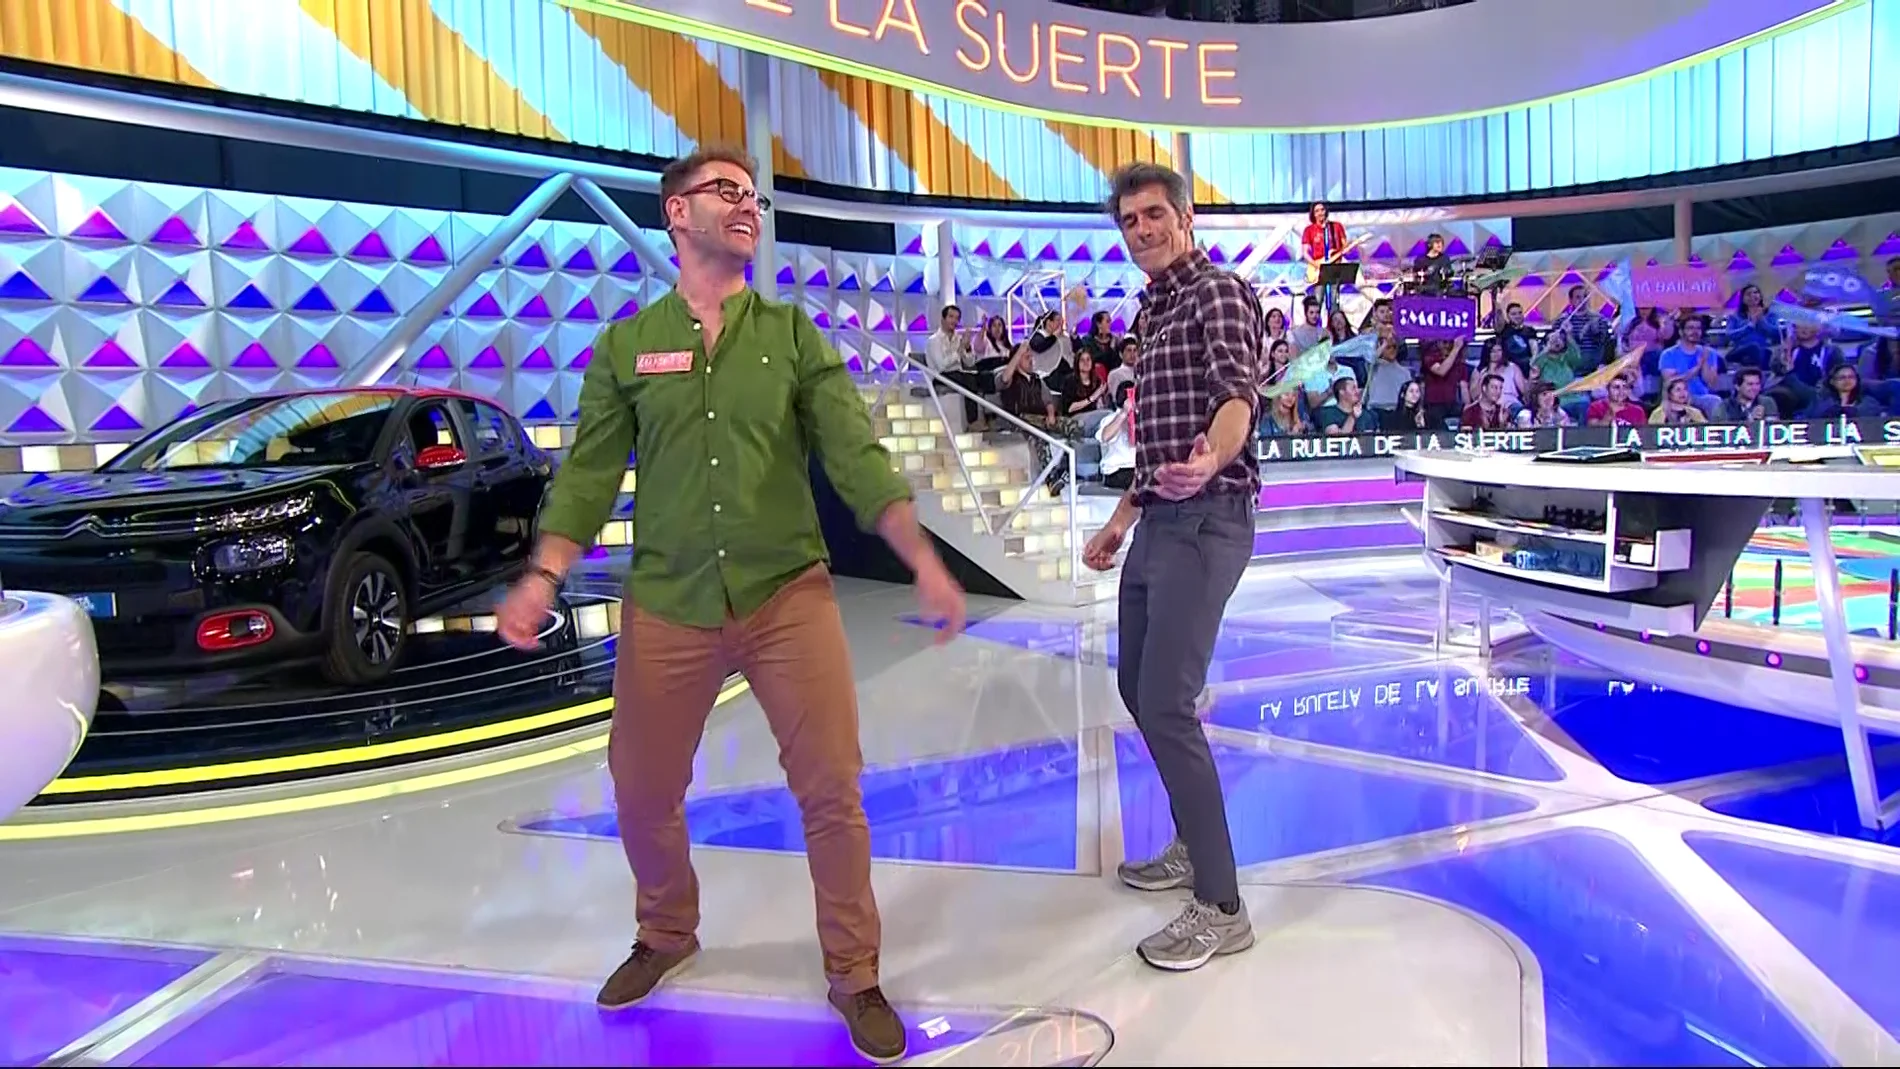 Luisete enseña el original "baile del hombro" a Jorge Fernández en 'La ruleta de la suerte'